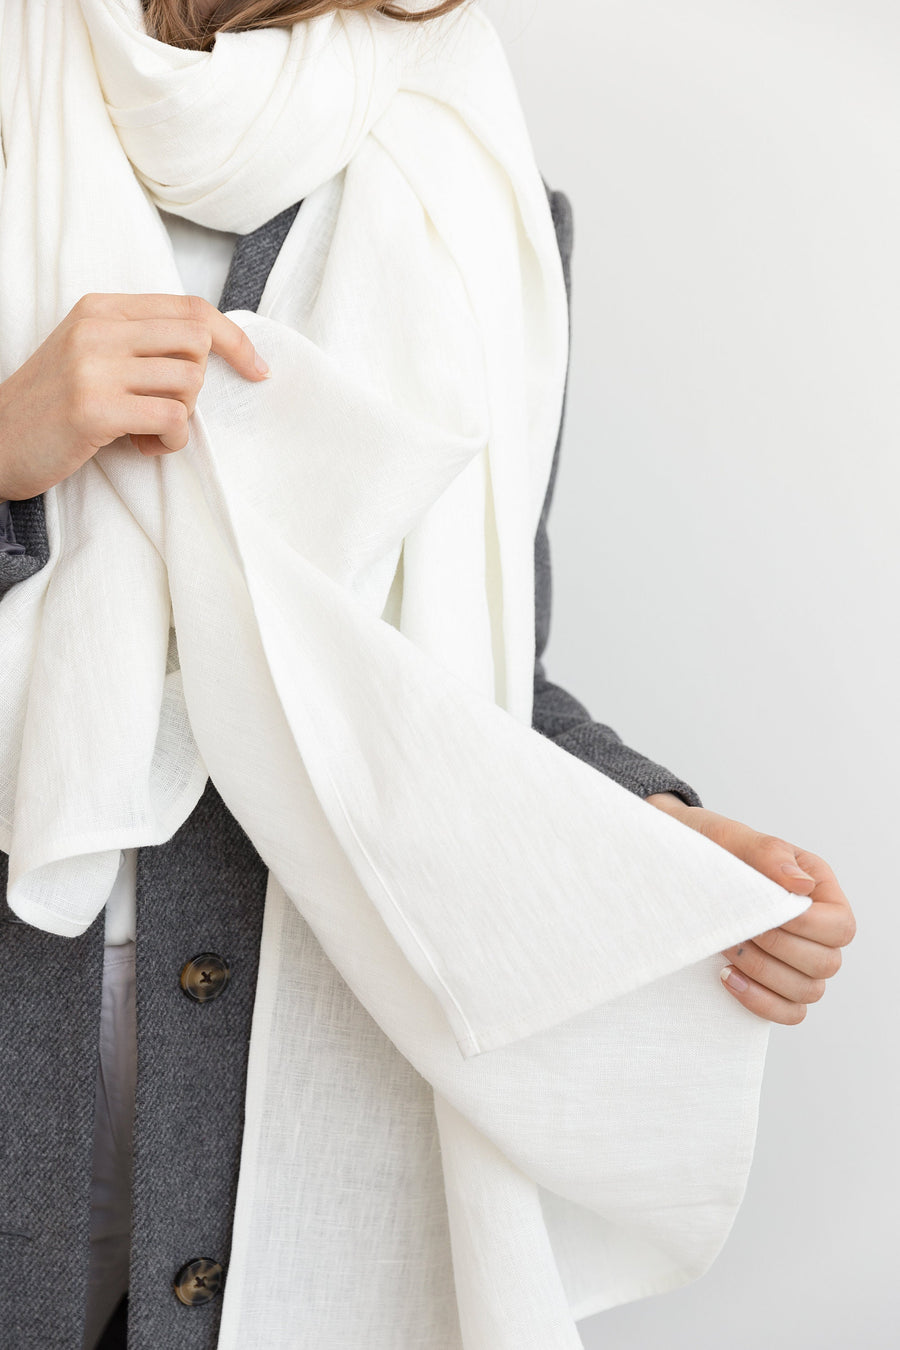 White linen scarf - Linen Couture Boutique